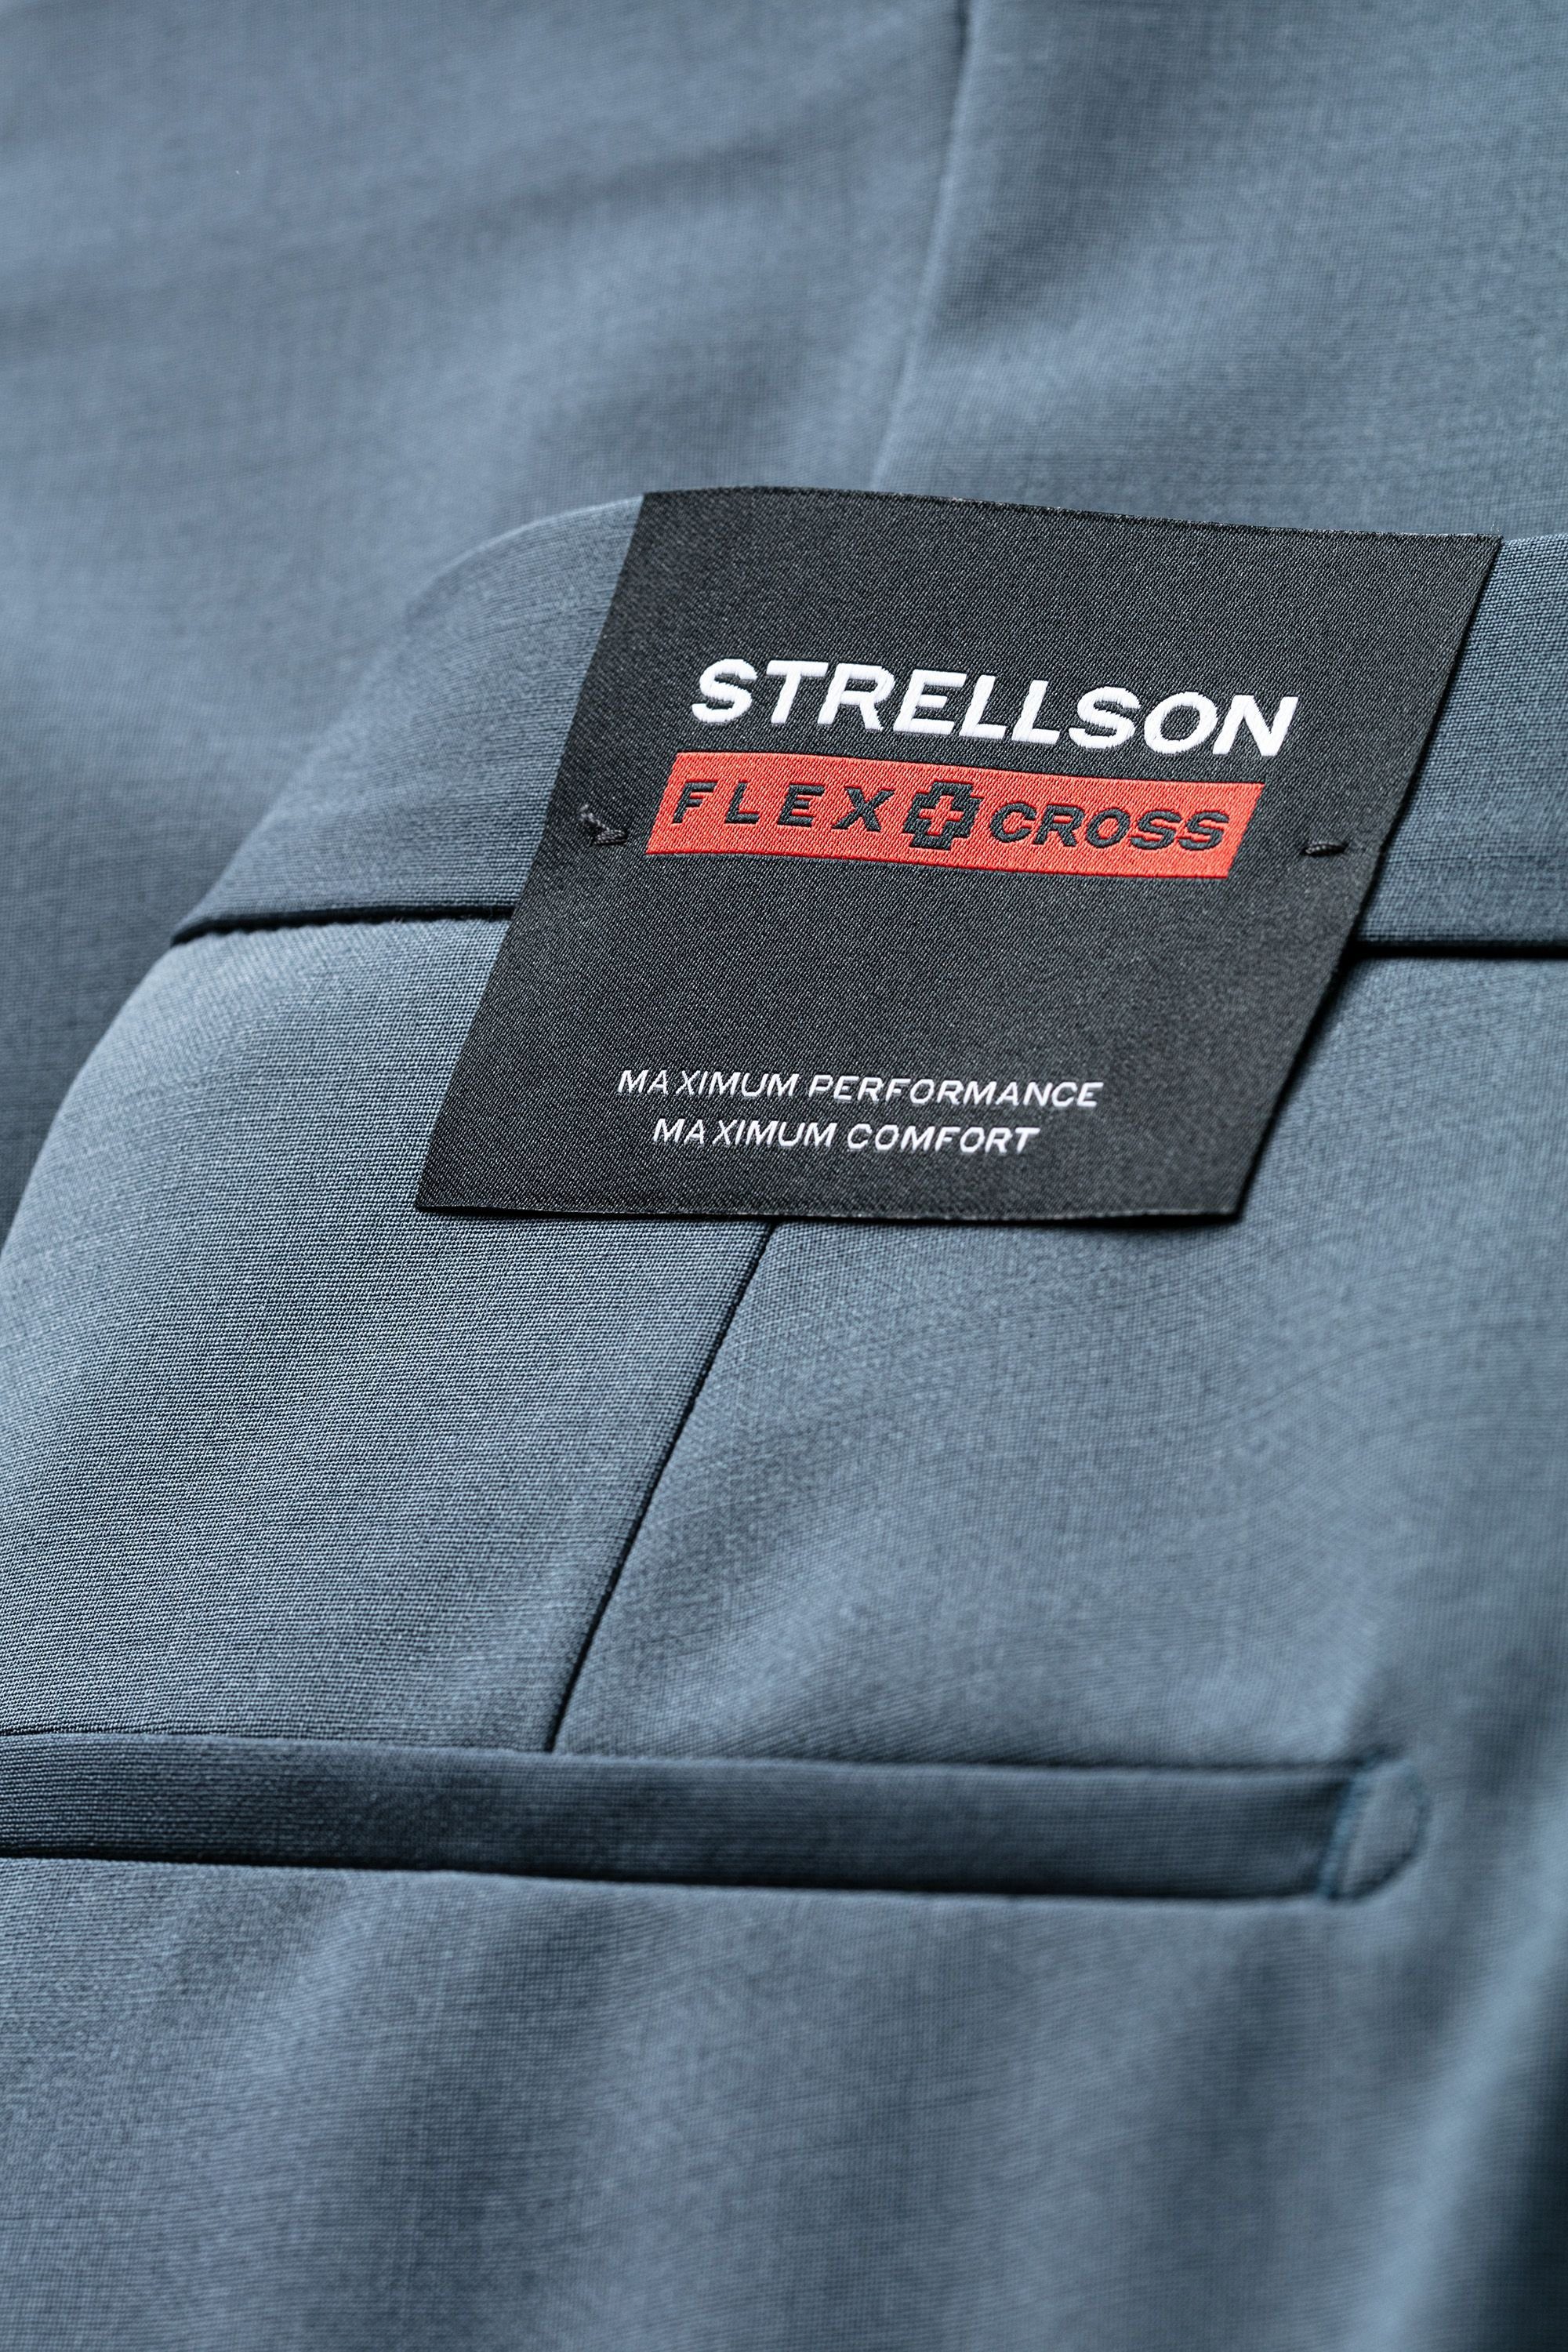 Strellson Anzughose